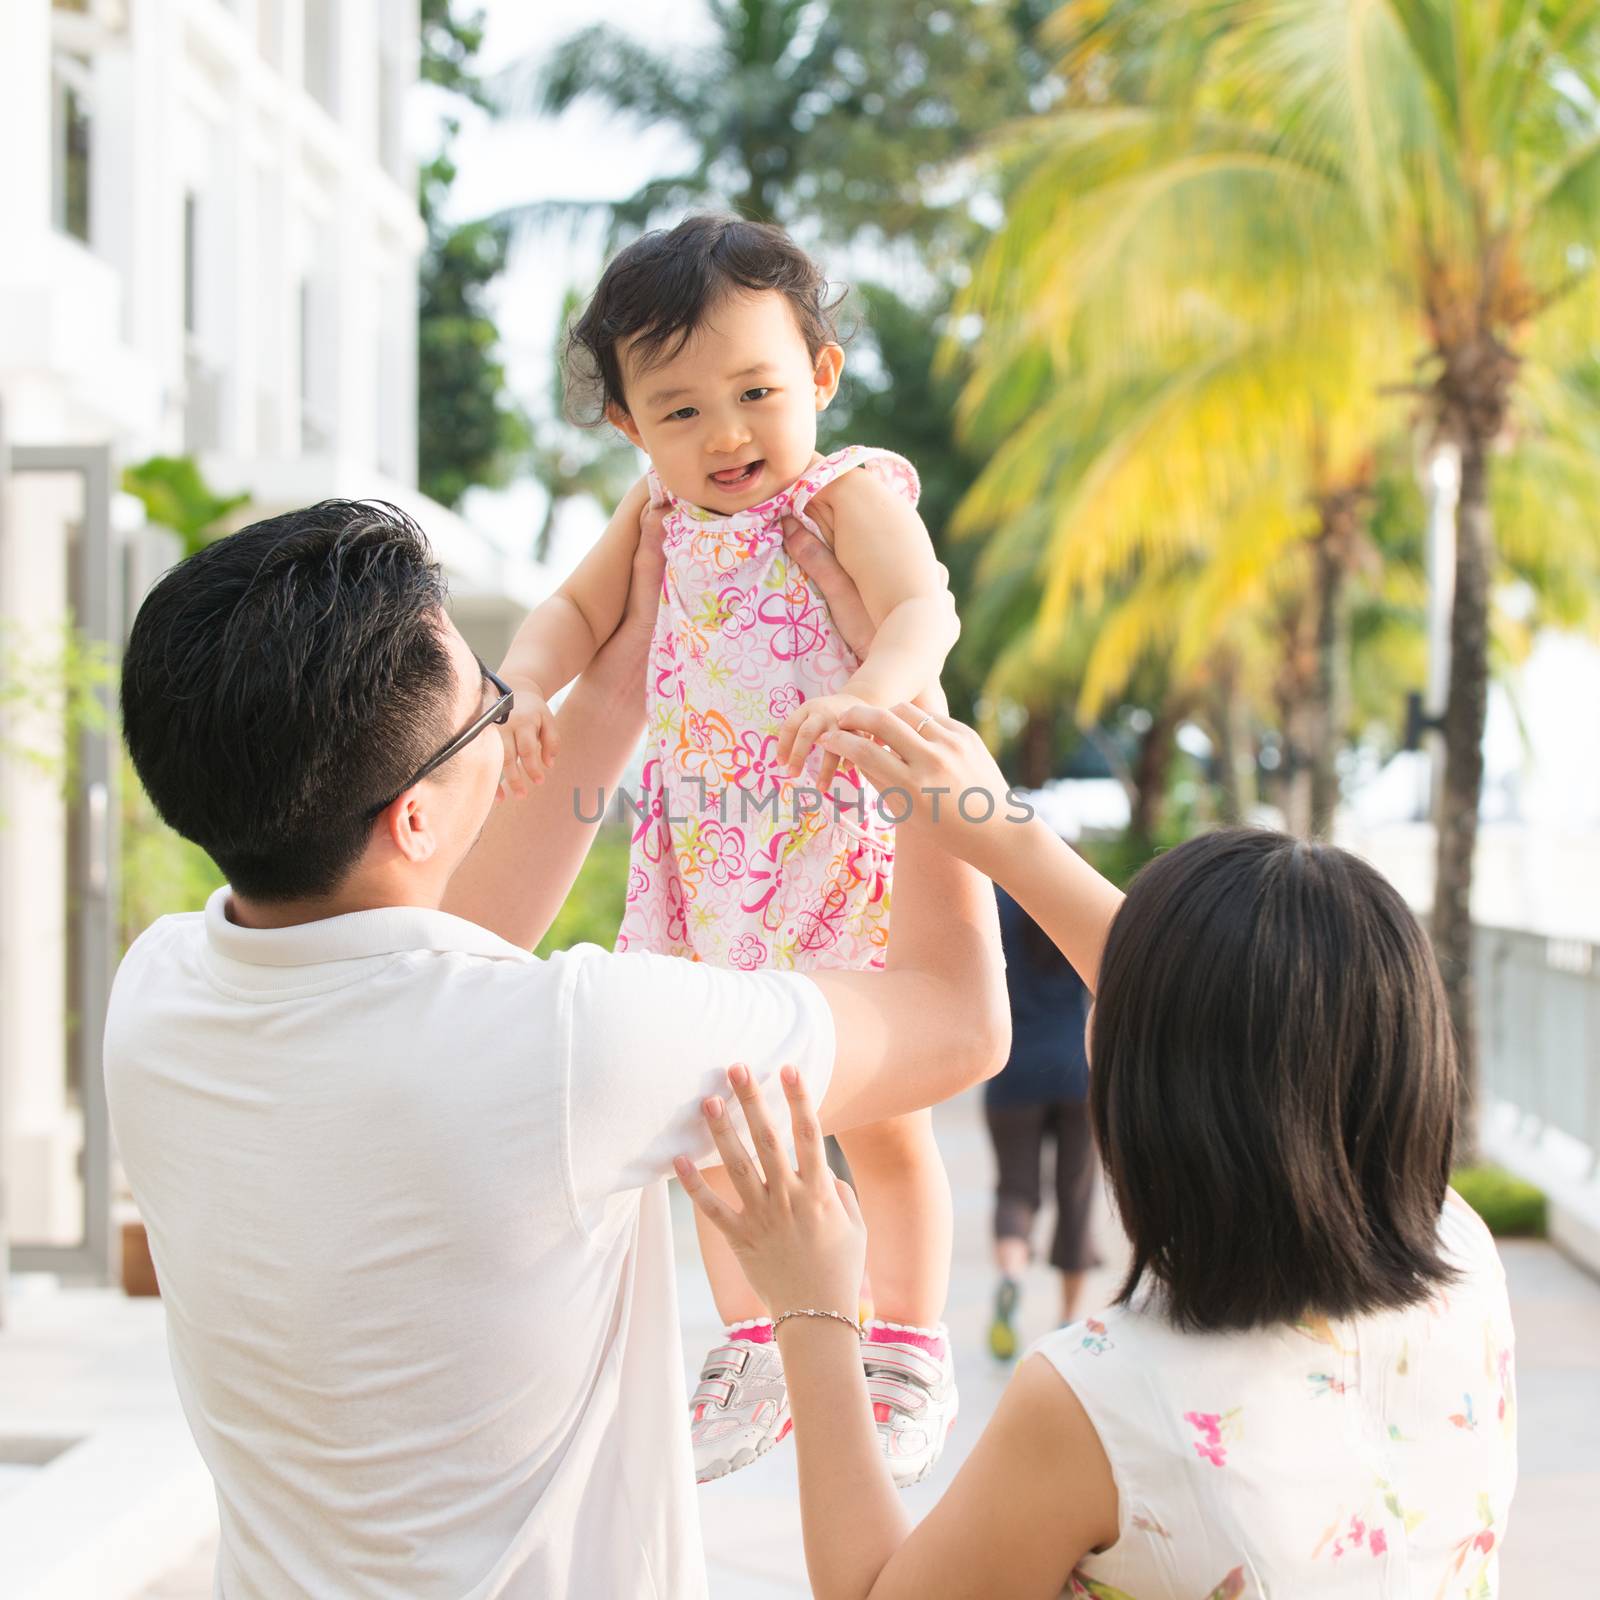 Asian family vacation by szefei